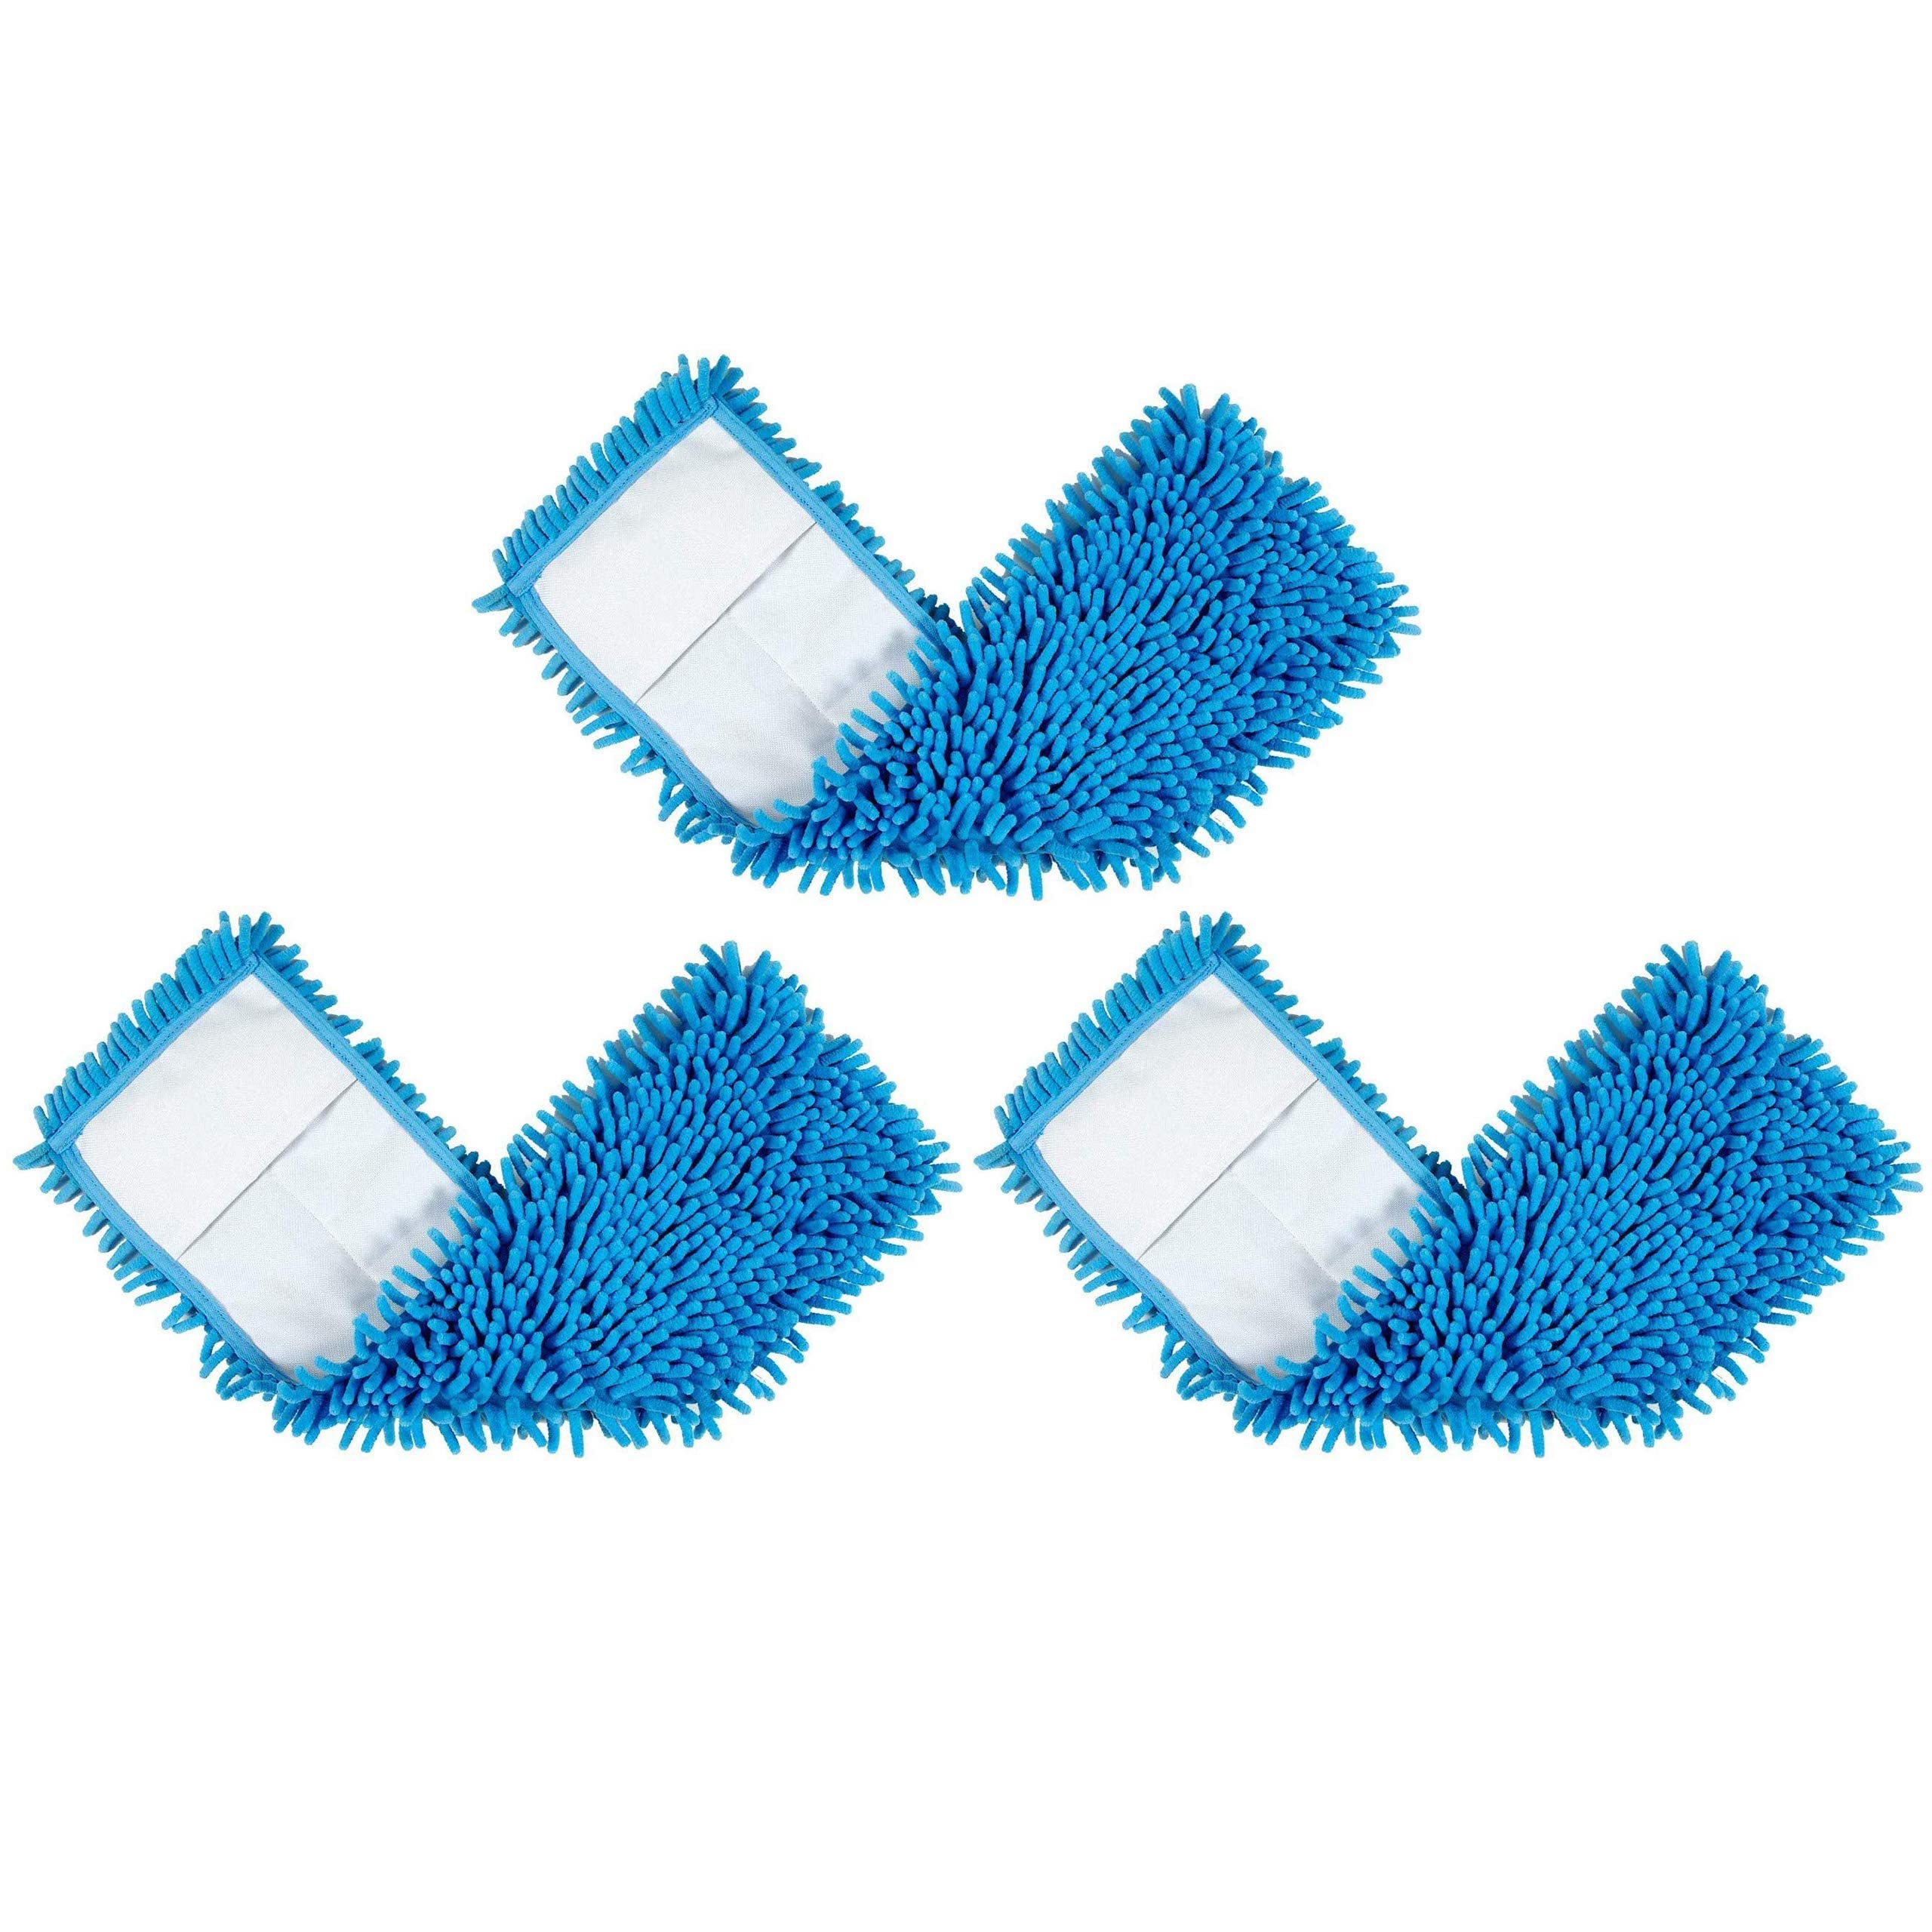 BiOHY Wischmopp 50 cm | Chenille Mopp | Microfasermopp blau (3er-Set) | Ideal für die Reinigung von empfindlichen und glatten Oberflächen